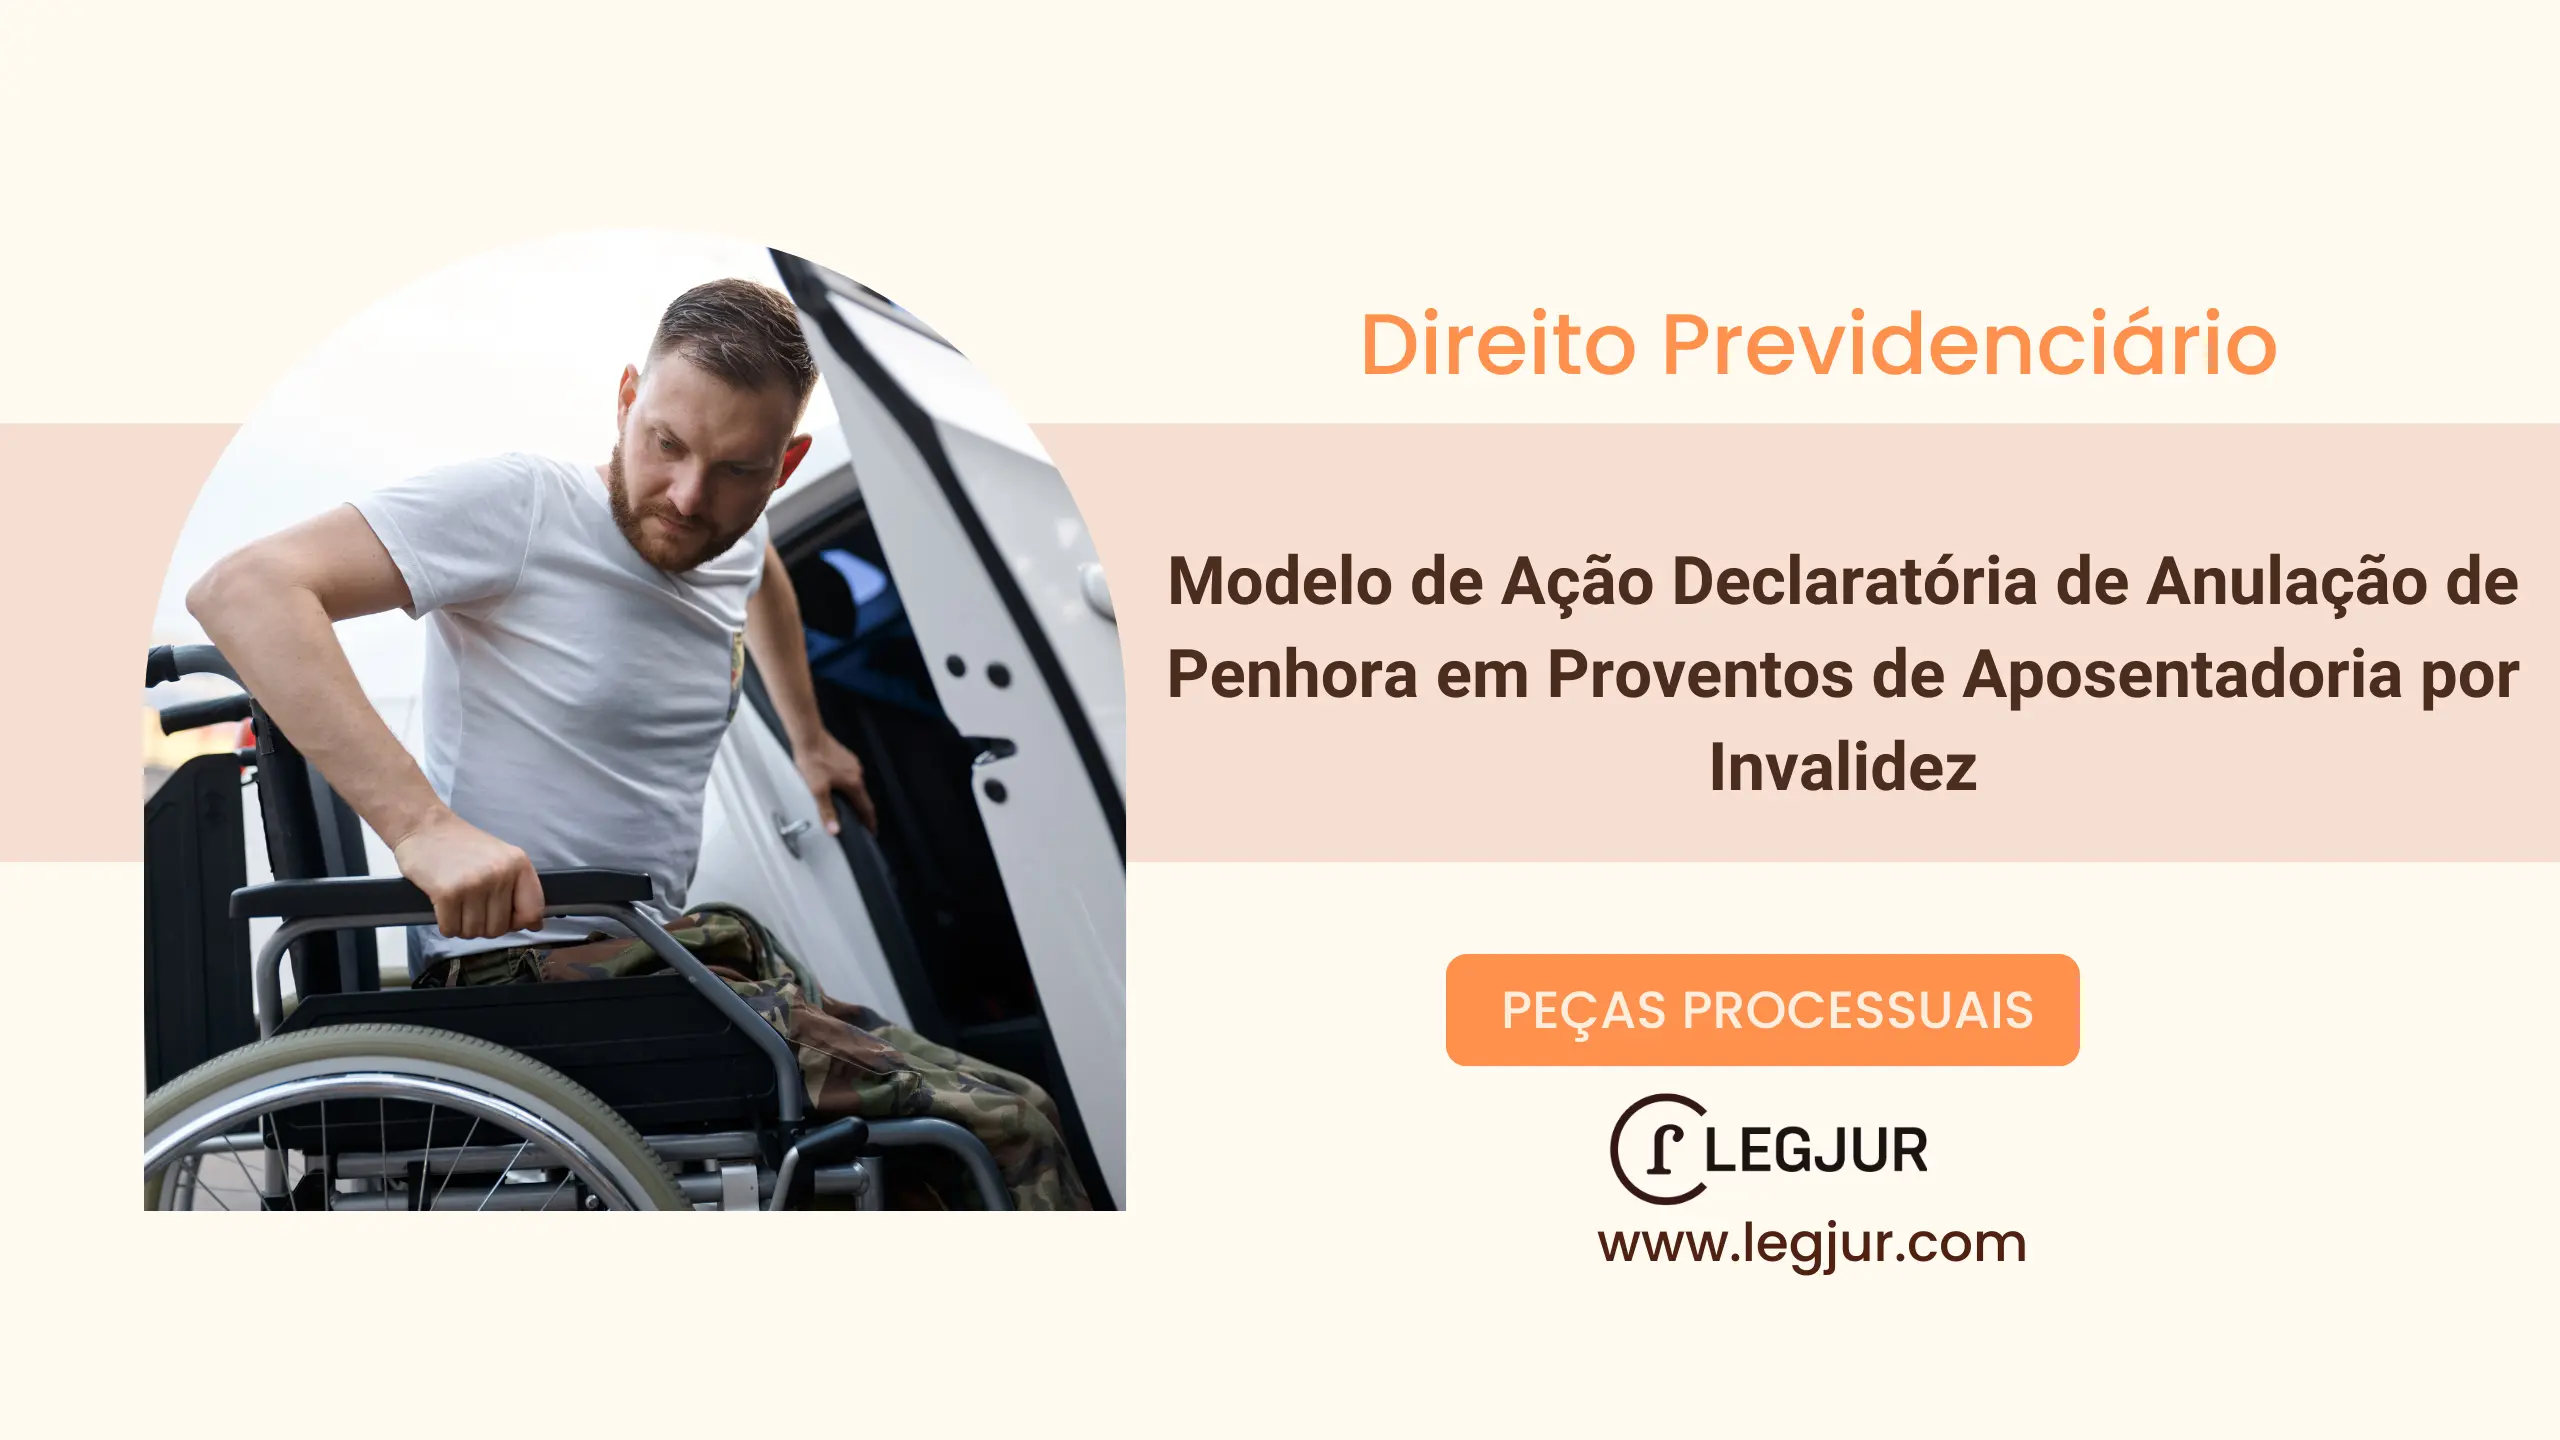 Modelo de Ação Declaratória de Anulação de Penhora em Proventos de Aposentadoria por Invalidez